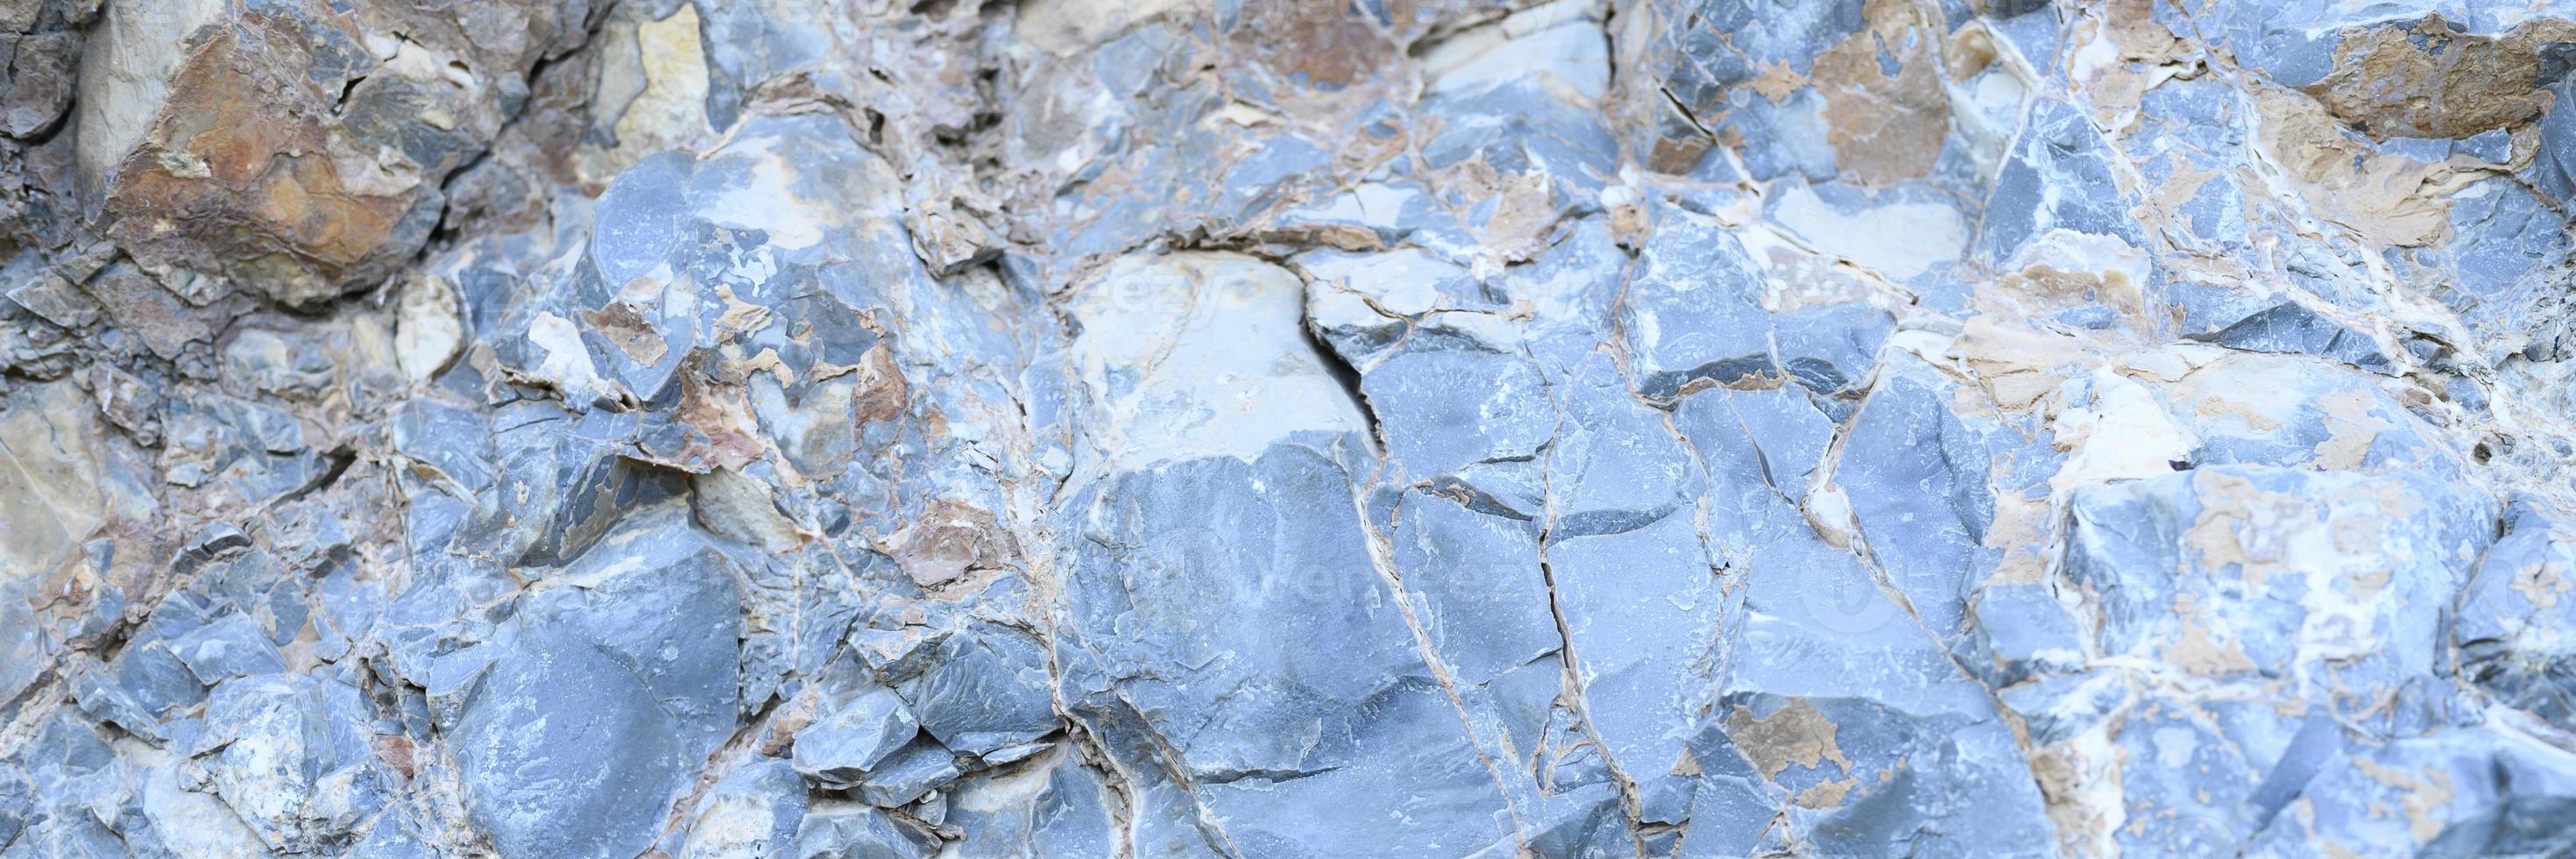 Textur der Oberfläche von grau-blauen Natursteinfelsen foto